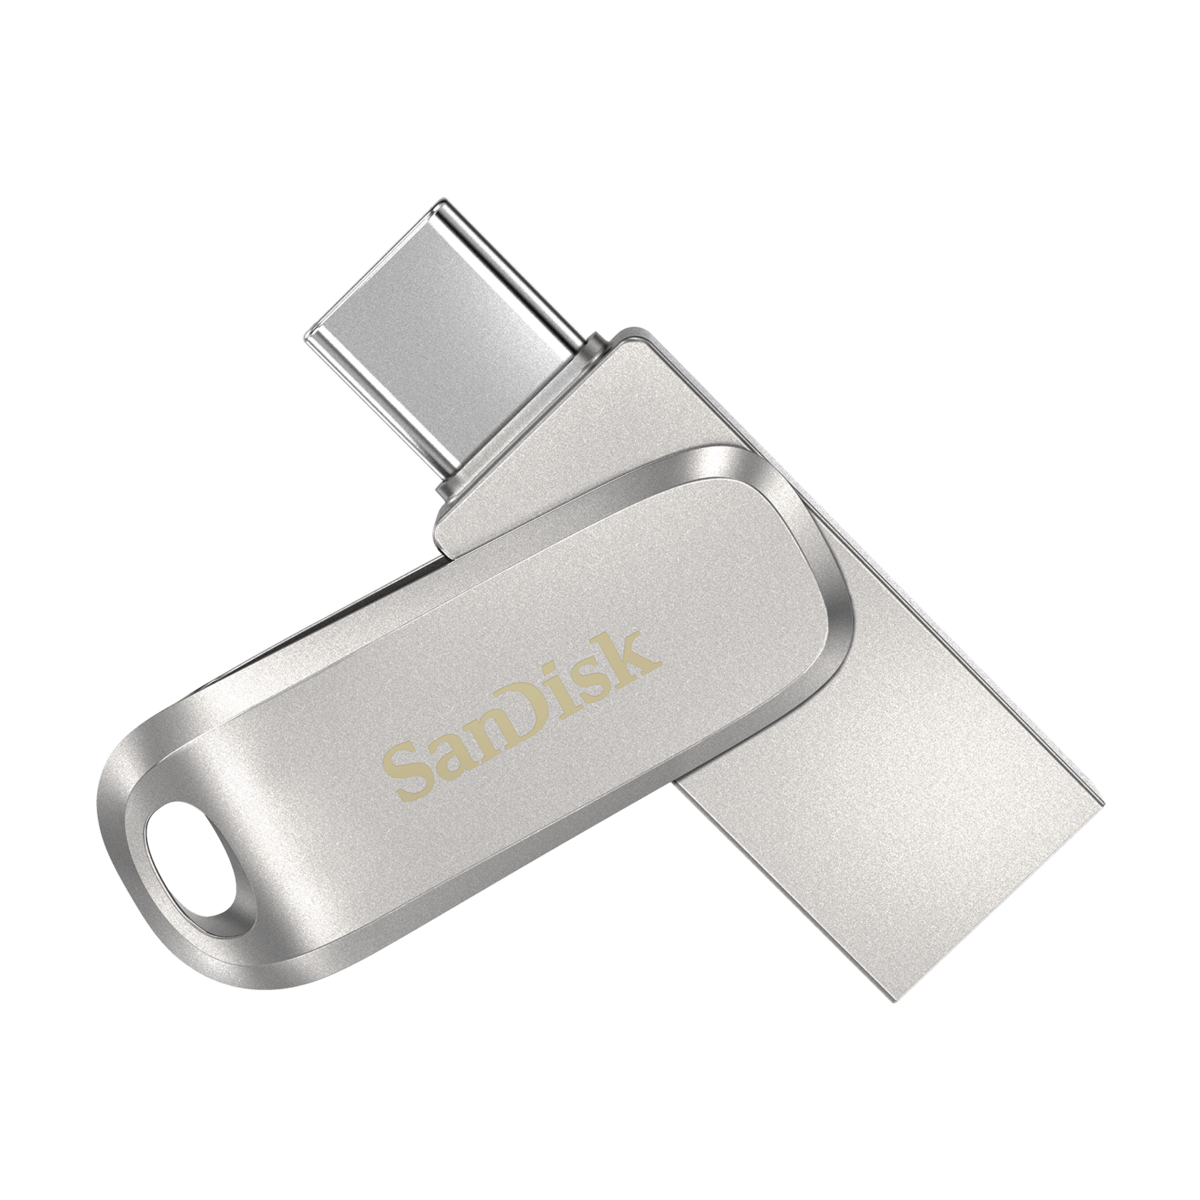 SanDisk Ultra Dual Drive - USB flash drive - 512 GB - USB 3.1 Gen 1 / USB-C | USA